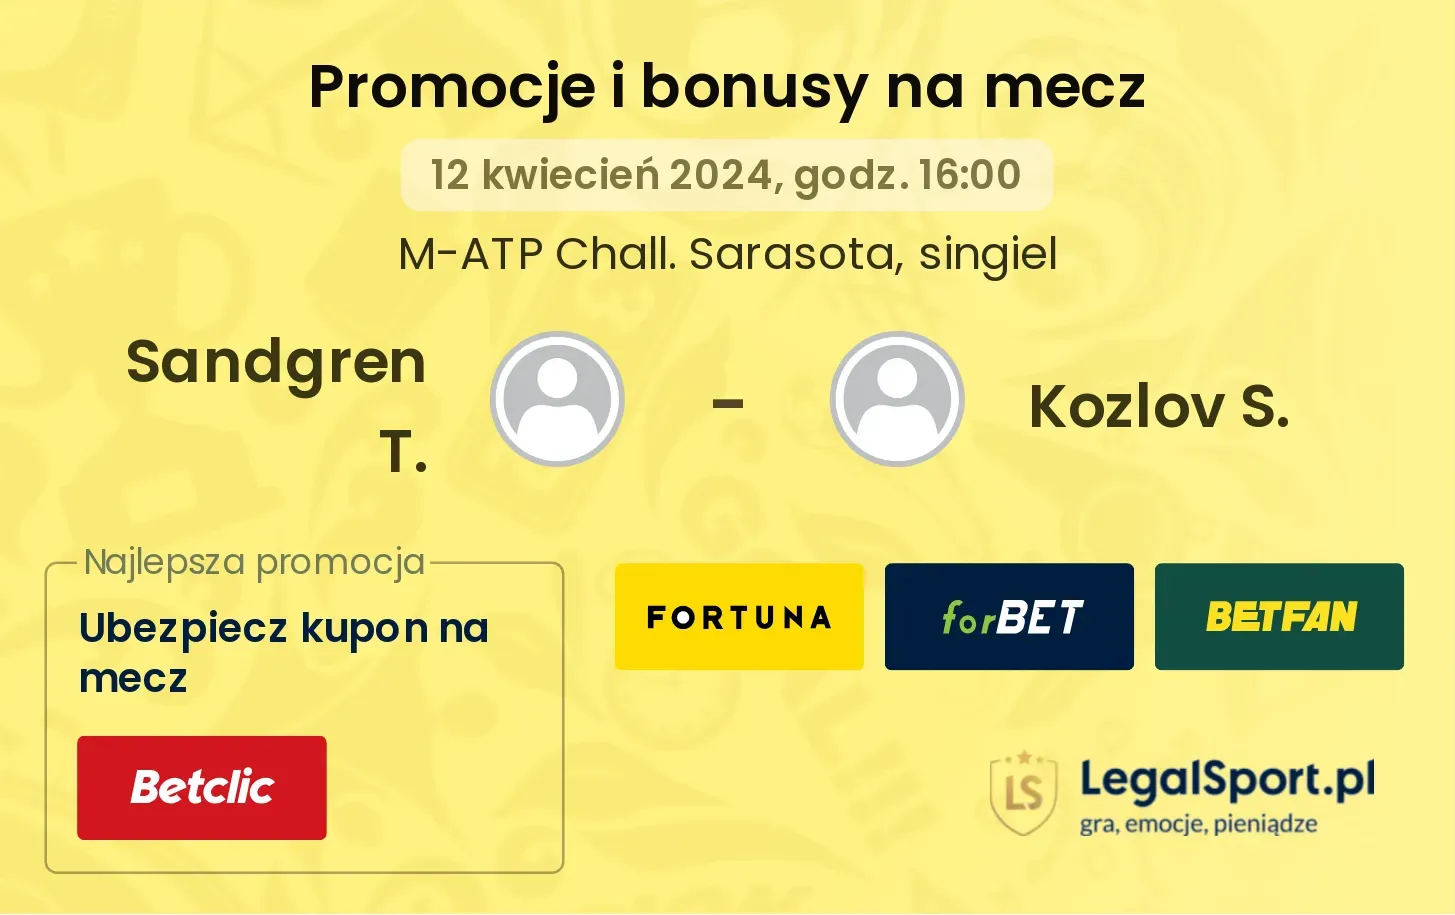 Sandgren T. - Kozlov S. promocje bonusy na mecz